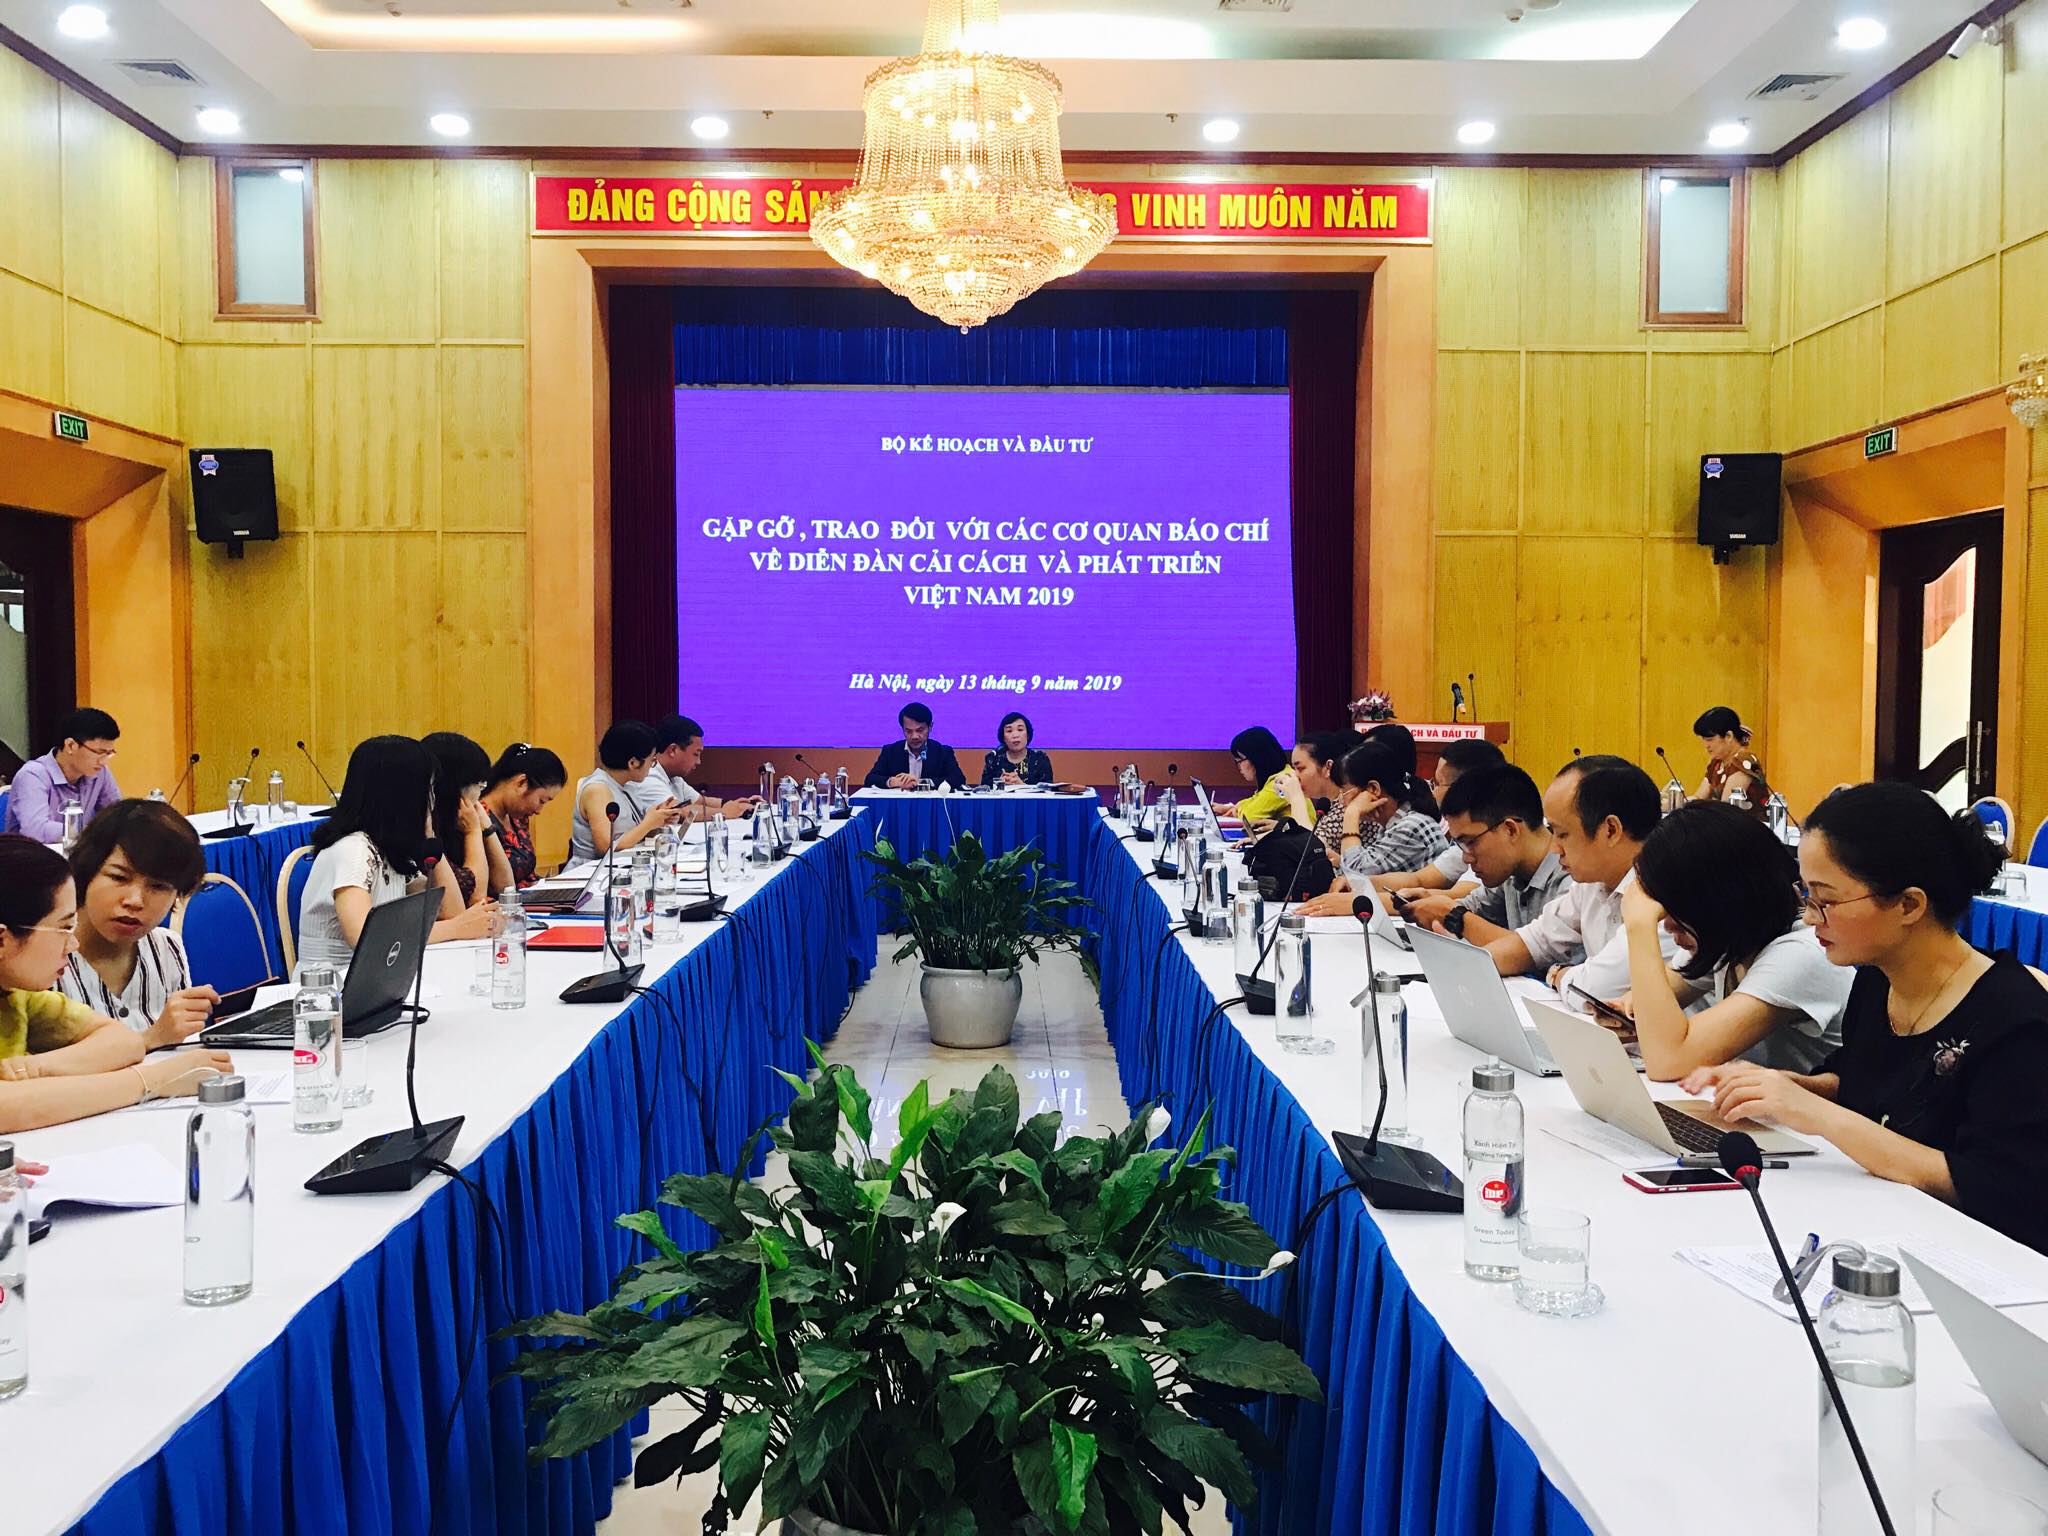 Gặp gỡ, trao đổi với báo chí về Diễn đàn cải cách và phát triển Việt Nam 2019